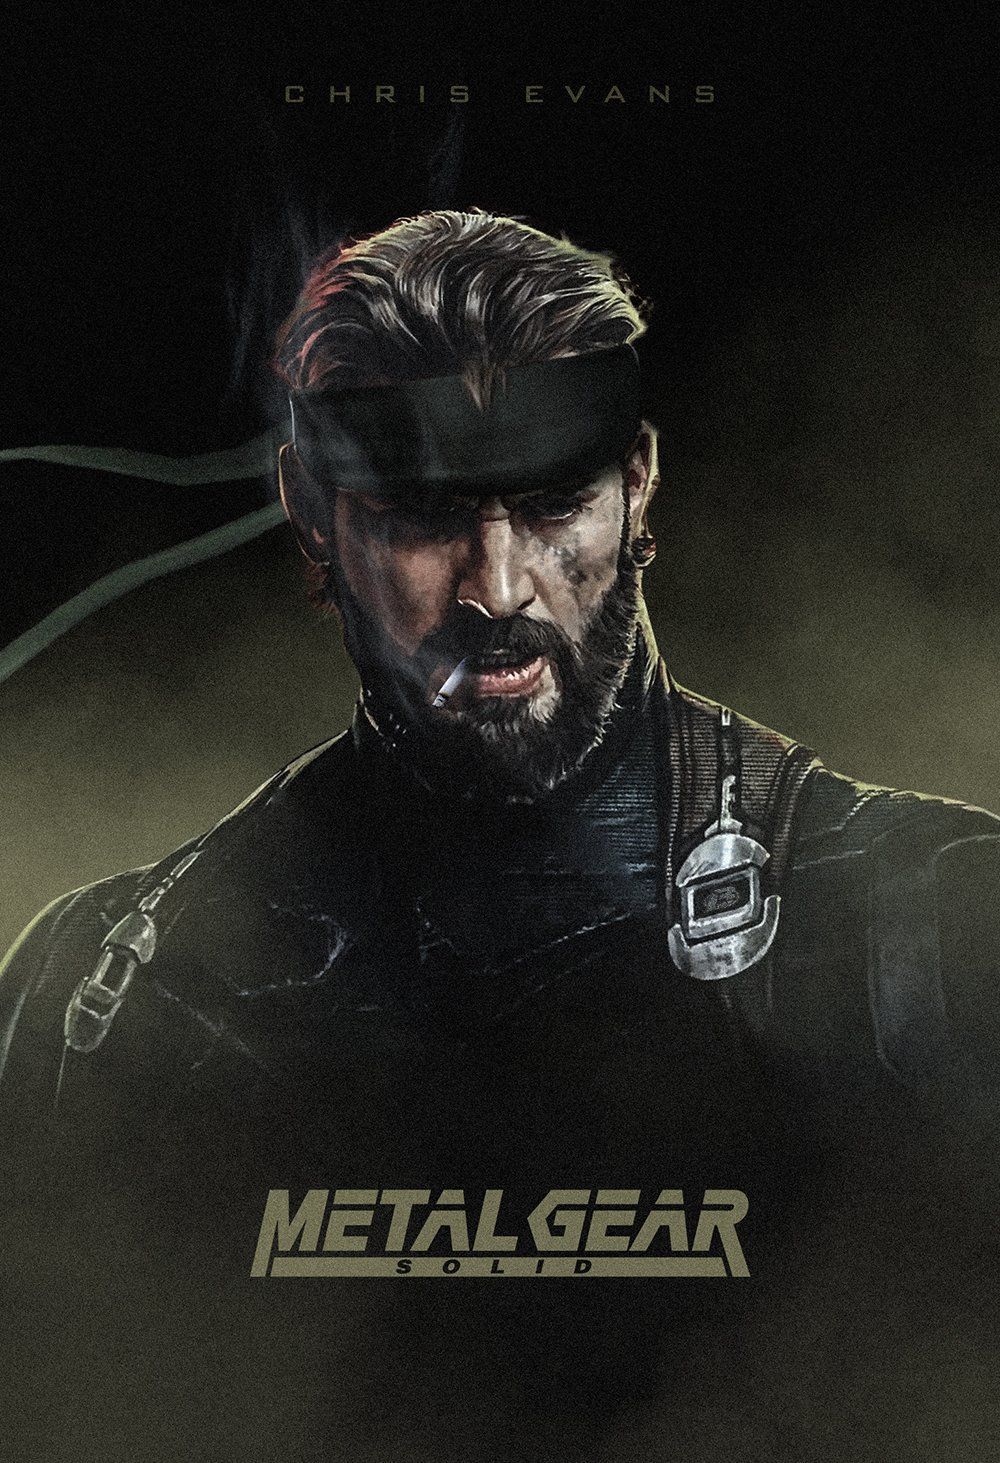 Chris Evans Metal Gear Solid